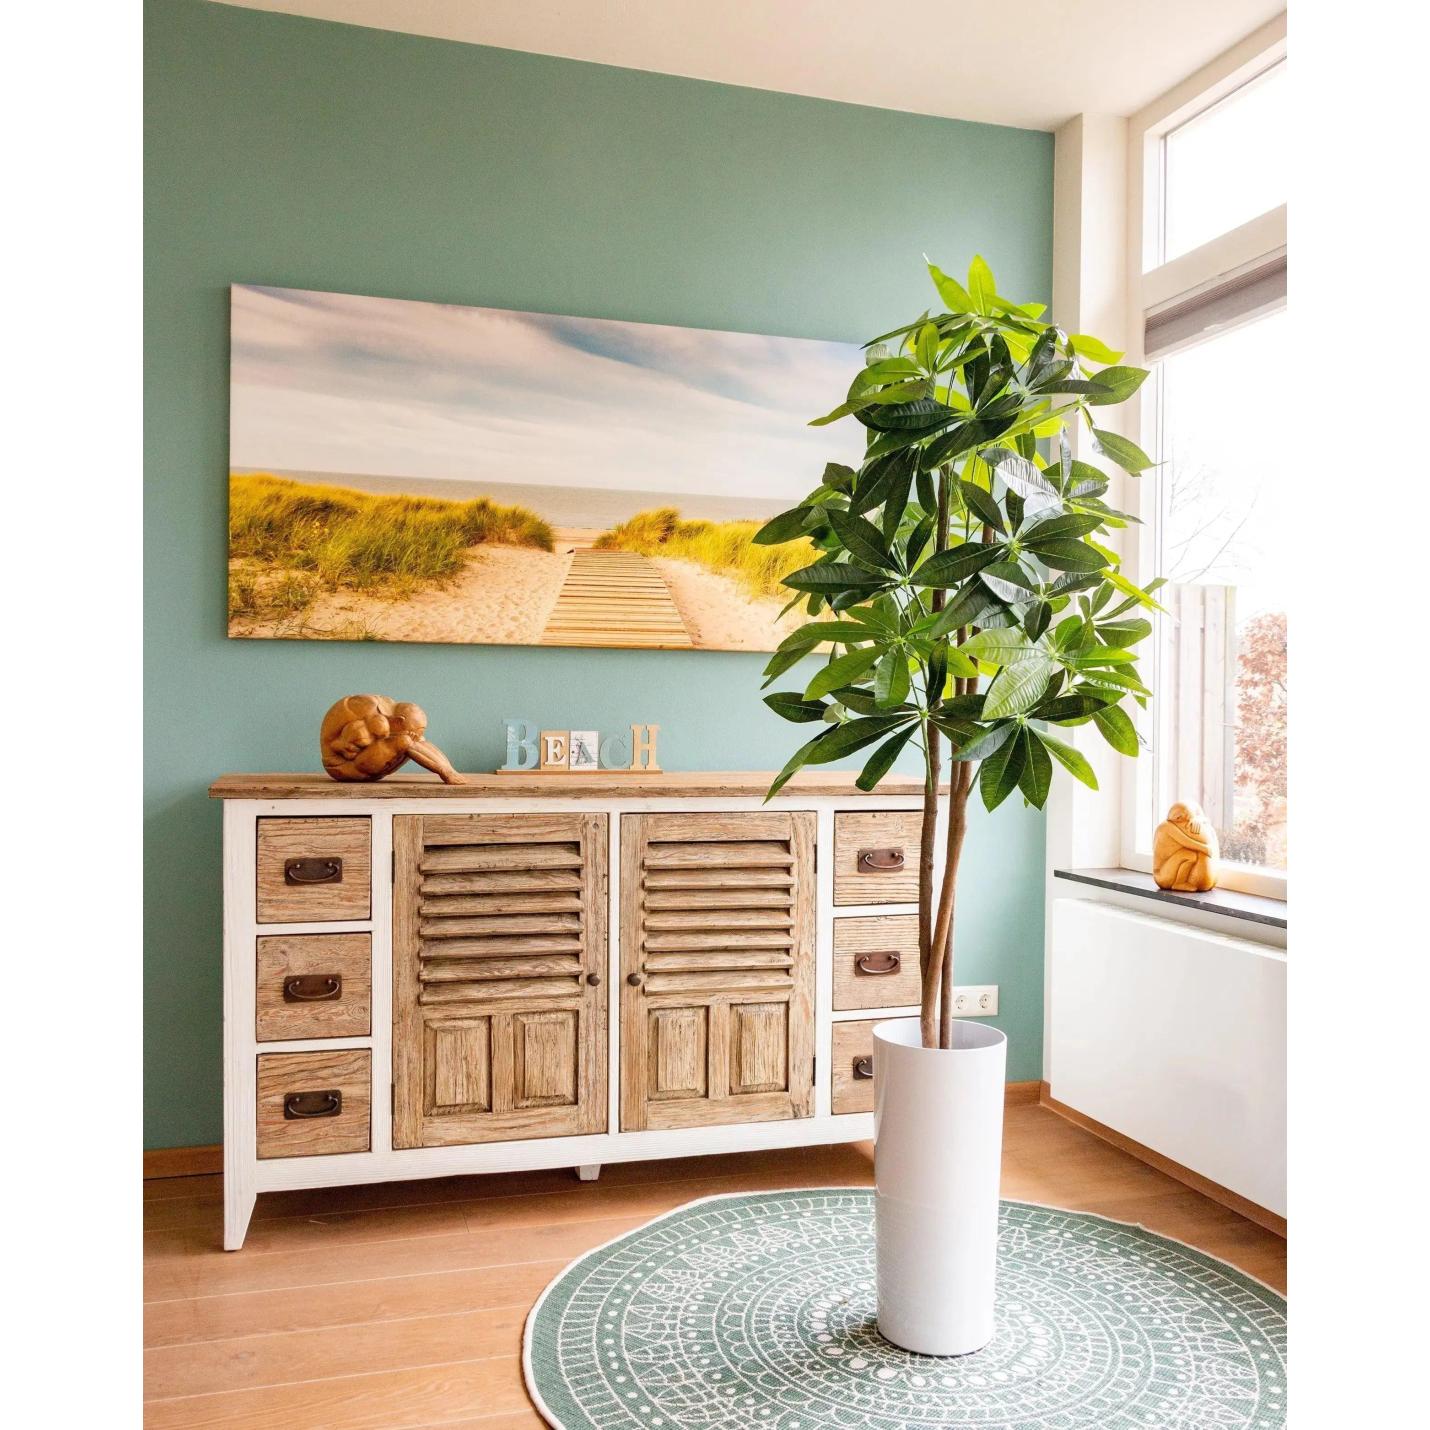 - Collectie van hoogwaardige kunstplanten en zijden bloemboeketten, inclusief kunstbloemen en nepplanten voor interieurdecoratie, perfect voor een onderhoudsvrij, groen thuis of kantoor.